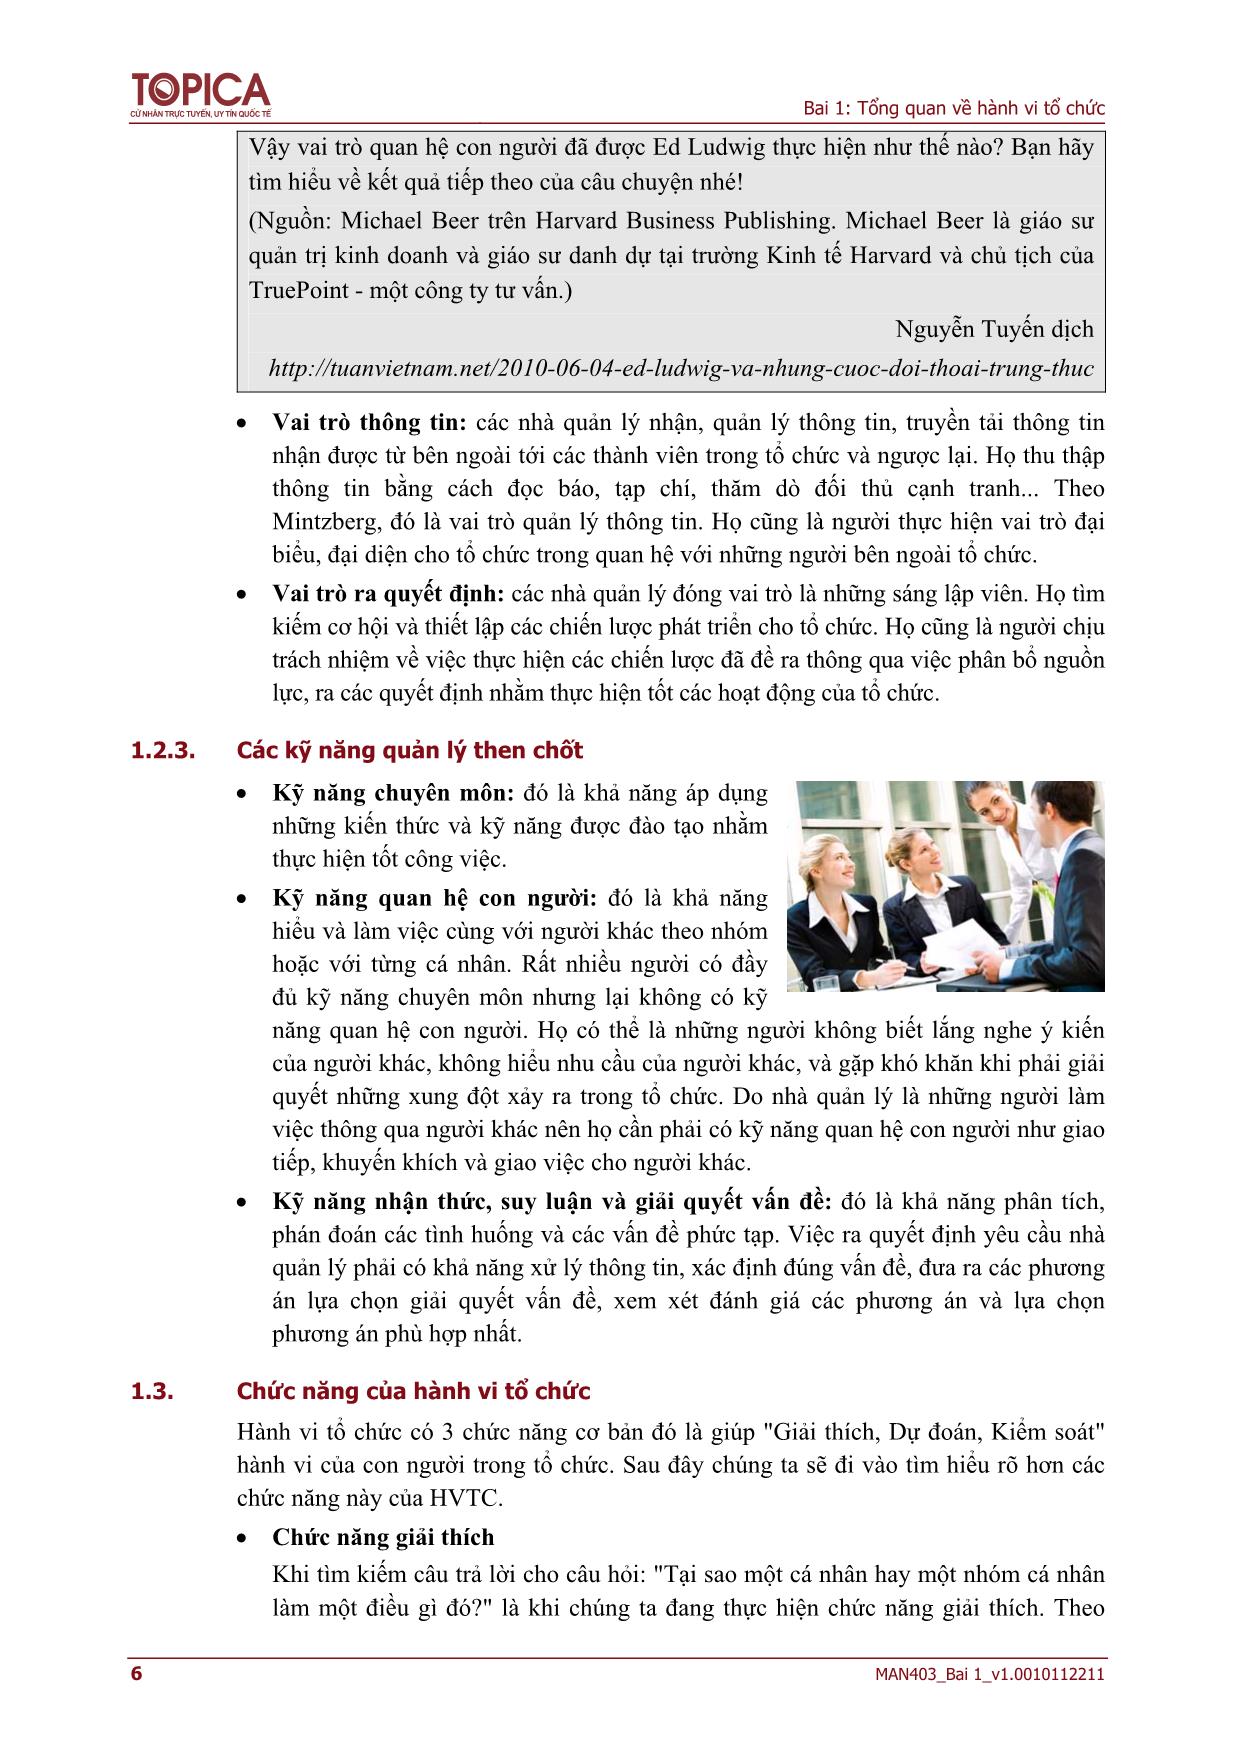 Bài giảng Hành vi tổ chức - Bài 1: Tổng quan về Hành vi tổ chức (Mới) trang 6